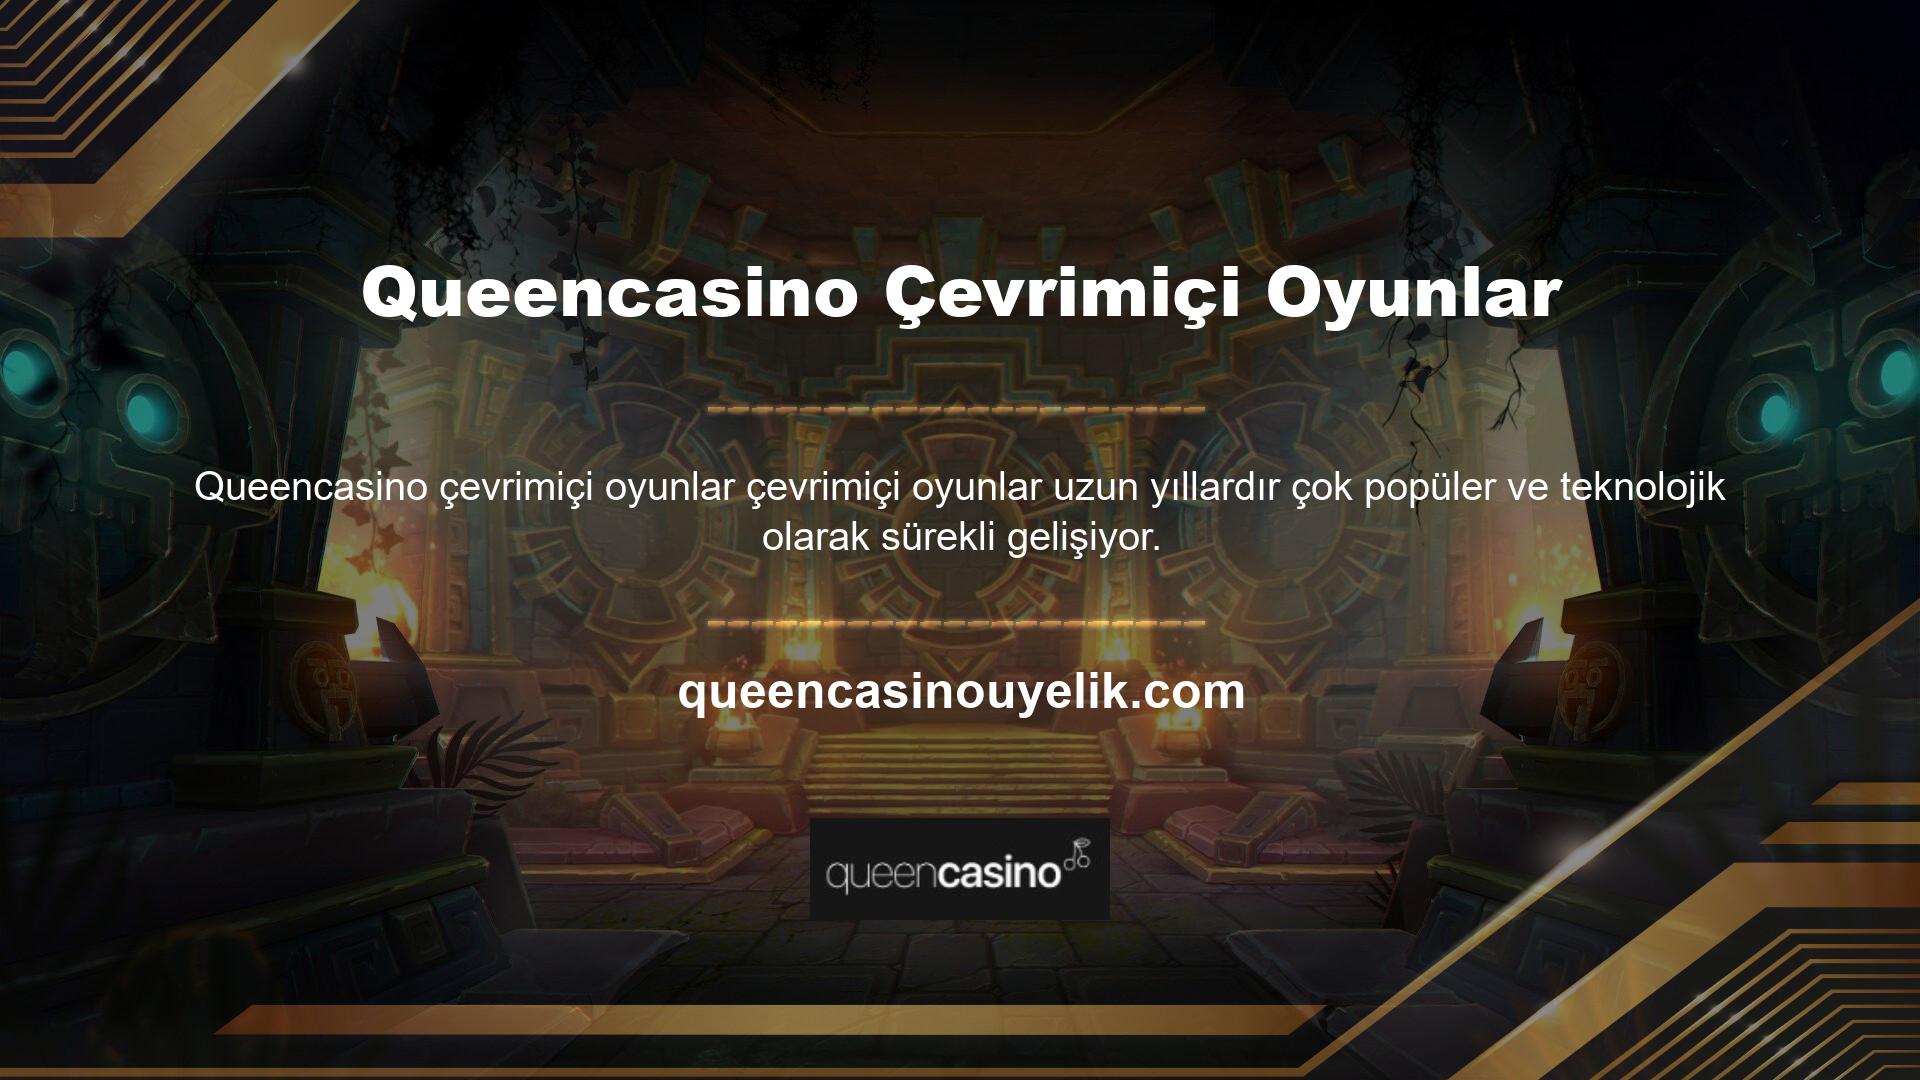 Tüm dünyada birçok kullanıcısı olan çevrimiçi casino oyunları